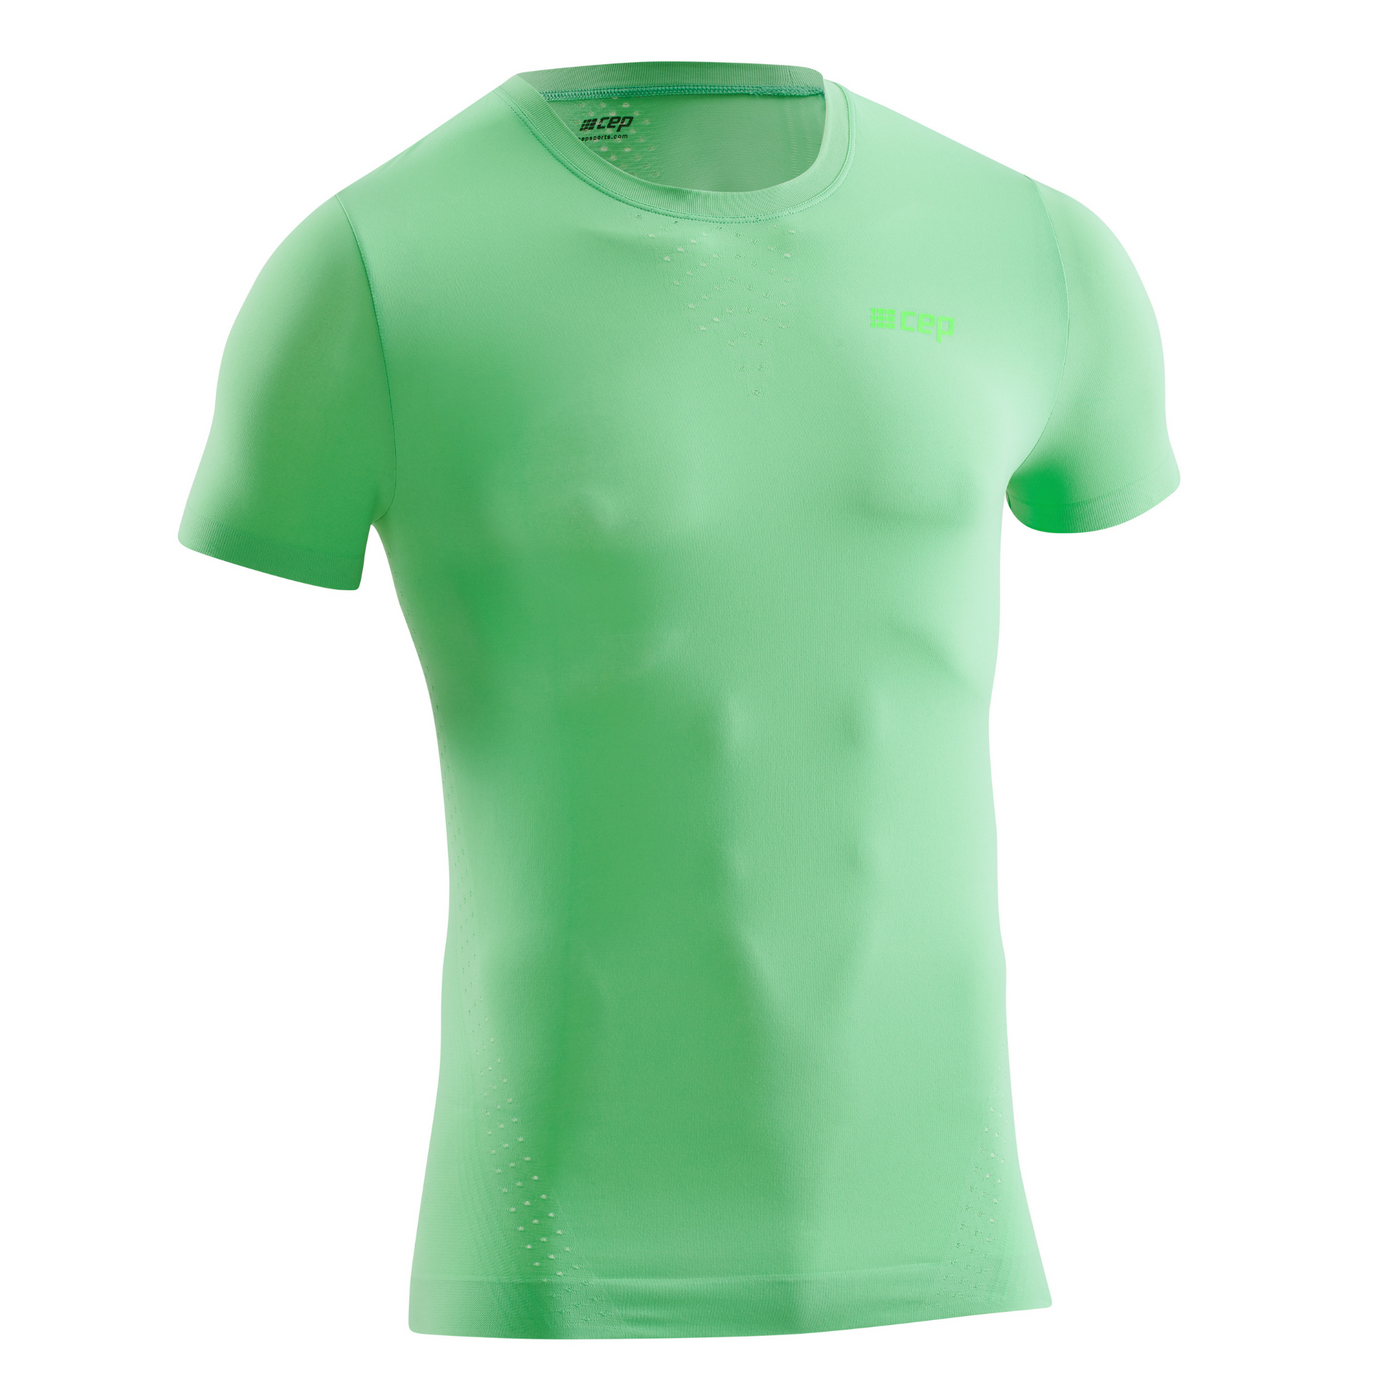 Ultralight Short Sleeve Shirt, Men, Green. Front View